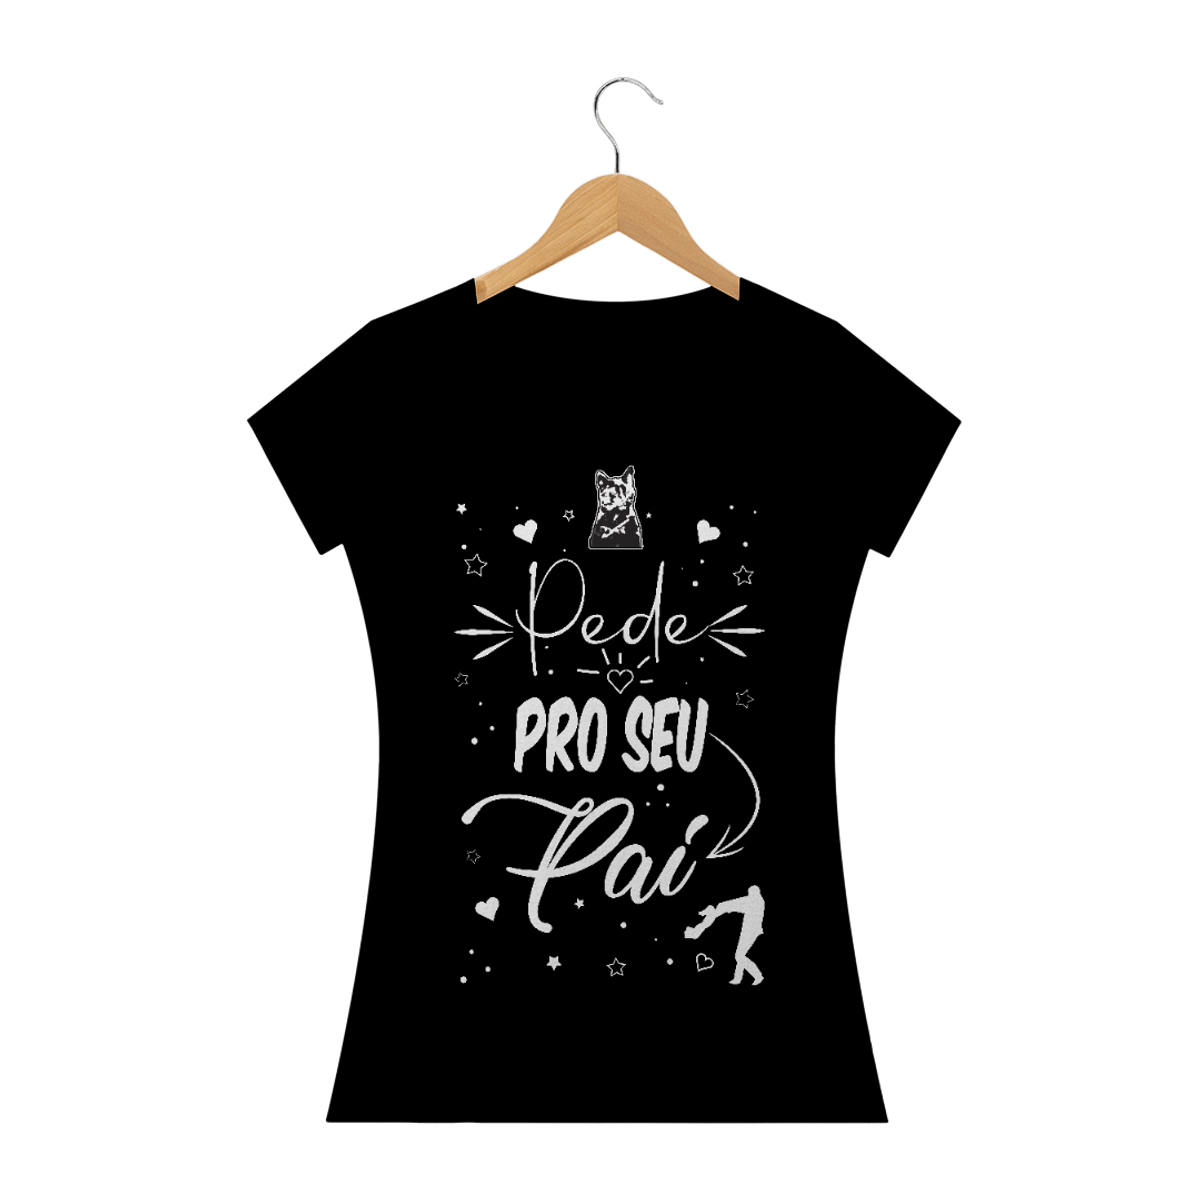 Nome do produtoPede pro seu pai / T-shirt prime escura